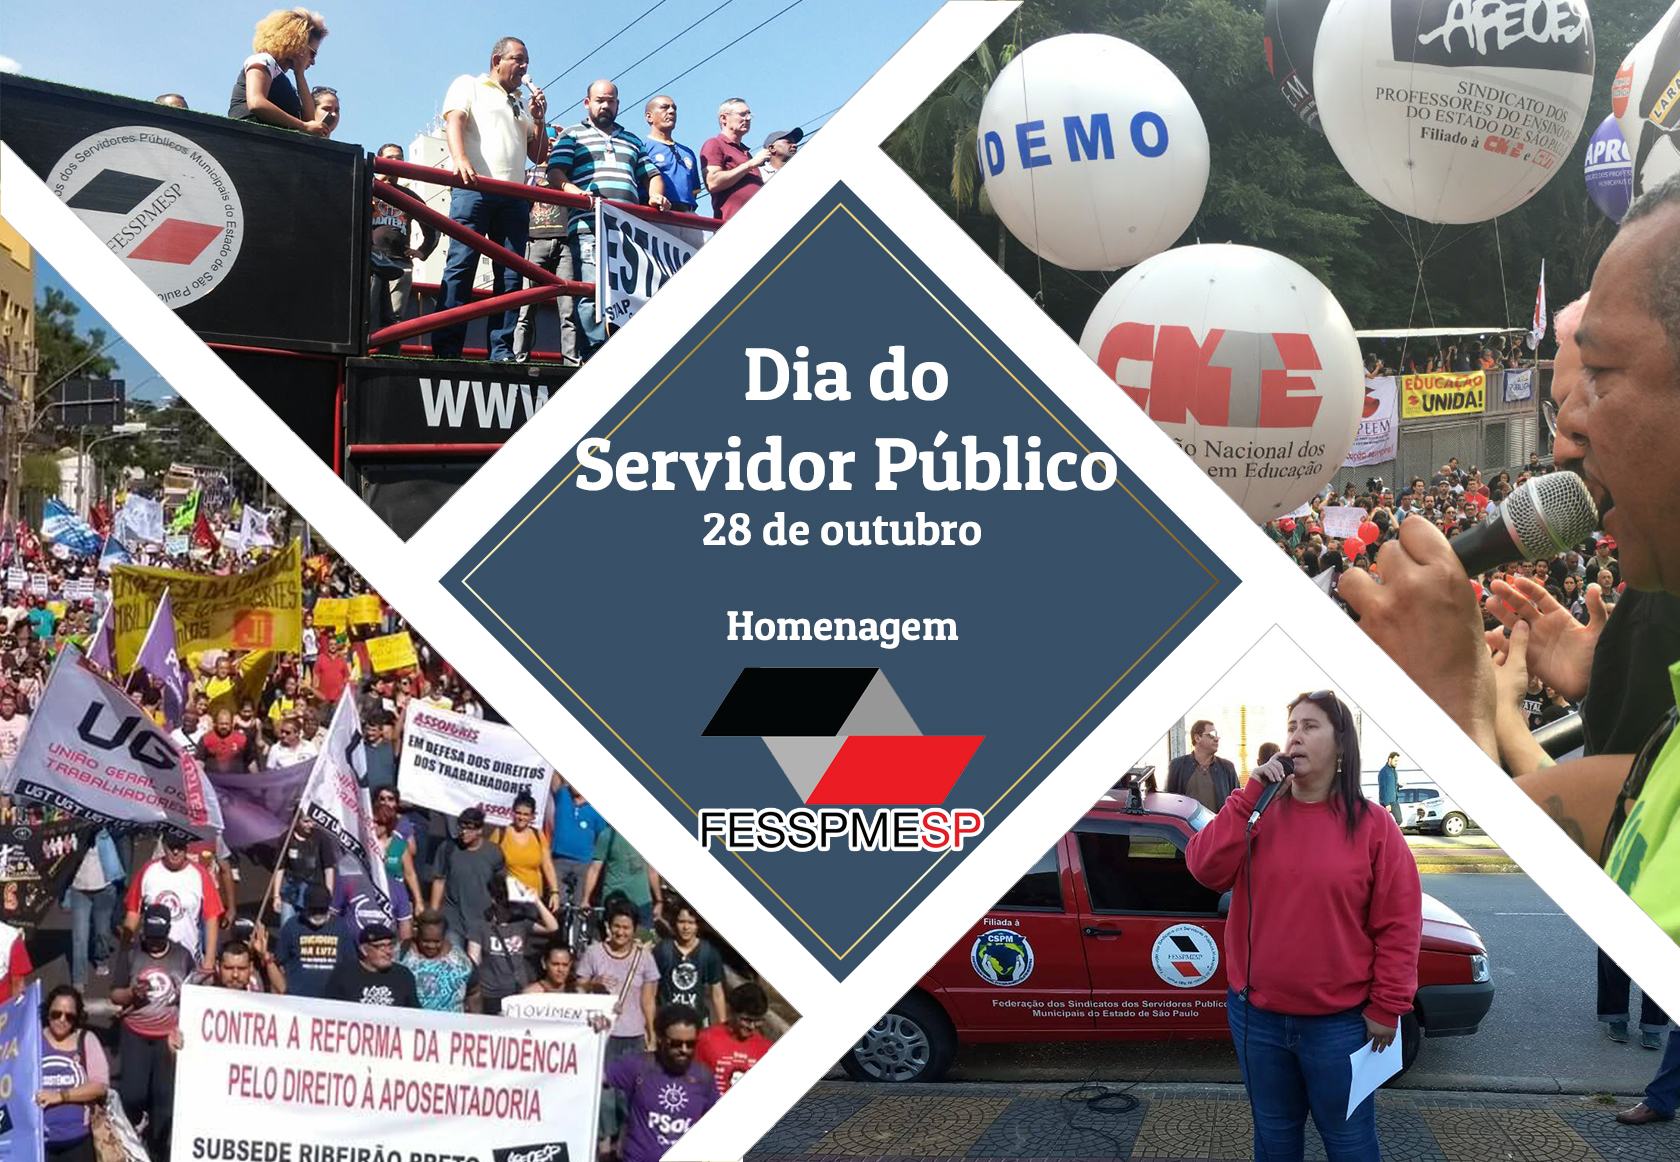 Dia do servidor público, homenagem da FESSPMESP aos servidores públicos municipais